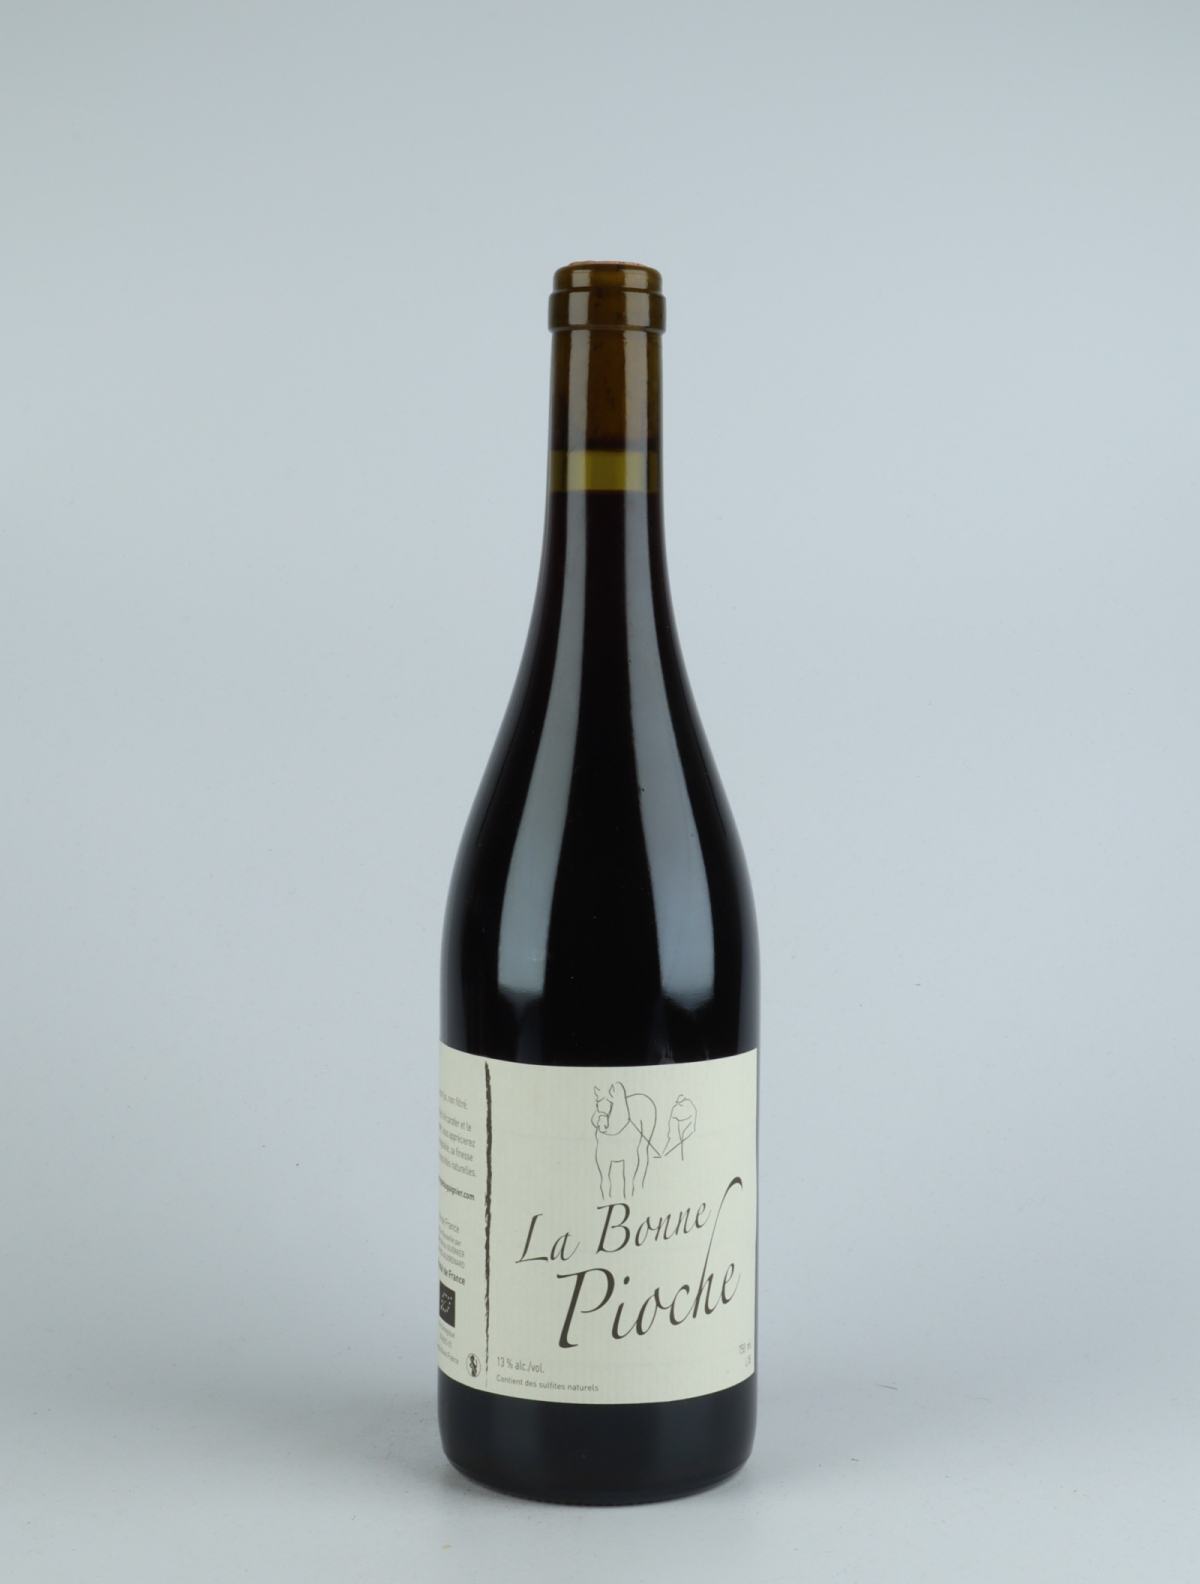 A bottle 2018 La Bonne Pioche Red wine from Michel Guignier, Beaujolais in France